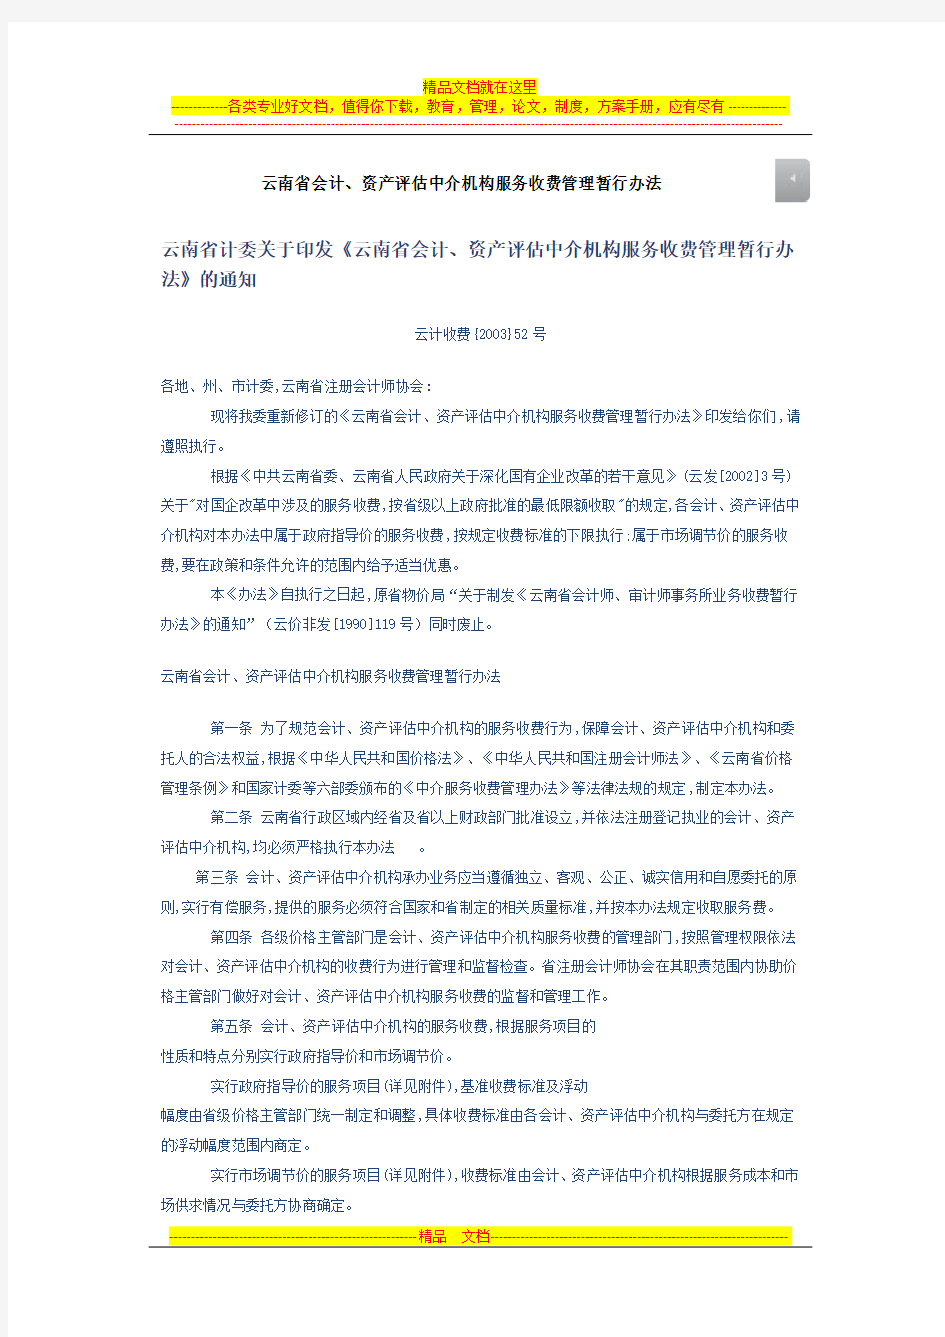 云南省会计、资产评估中介机构服务收费管理暂行办法